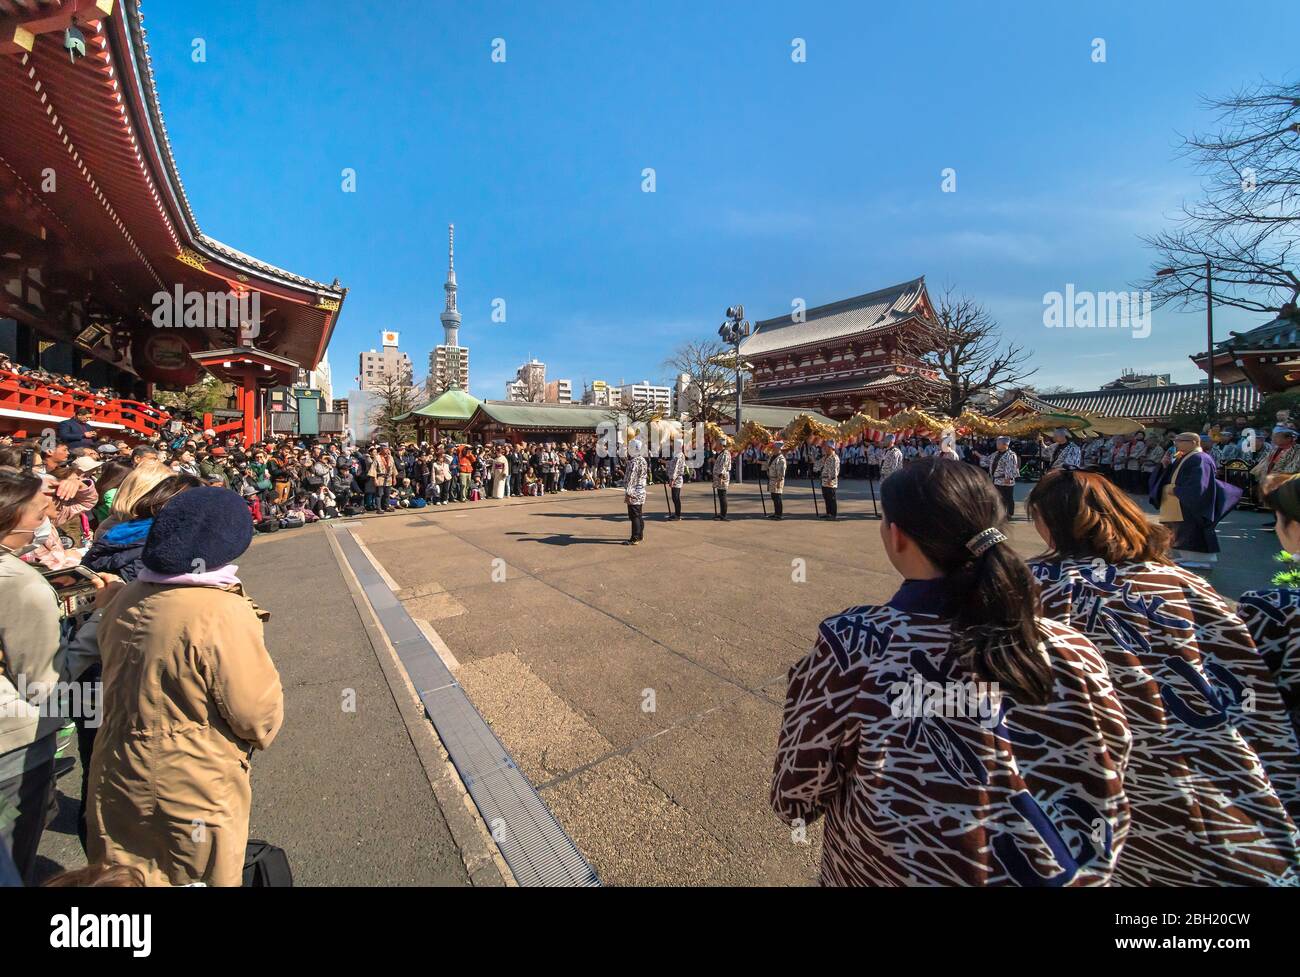 tokio, japan - märz 18 2020: Japanische Puppenspieler halten einen riesigen goldenen Drachen für das traditionelle Tanzfestival, das dem Bodhisattva Kan gewidmet ist Stockfoto